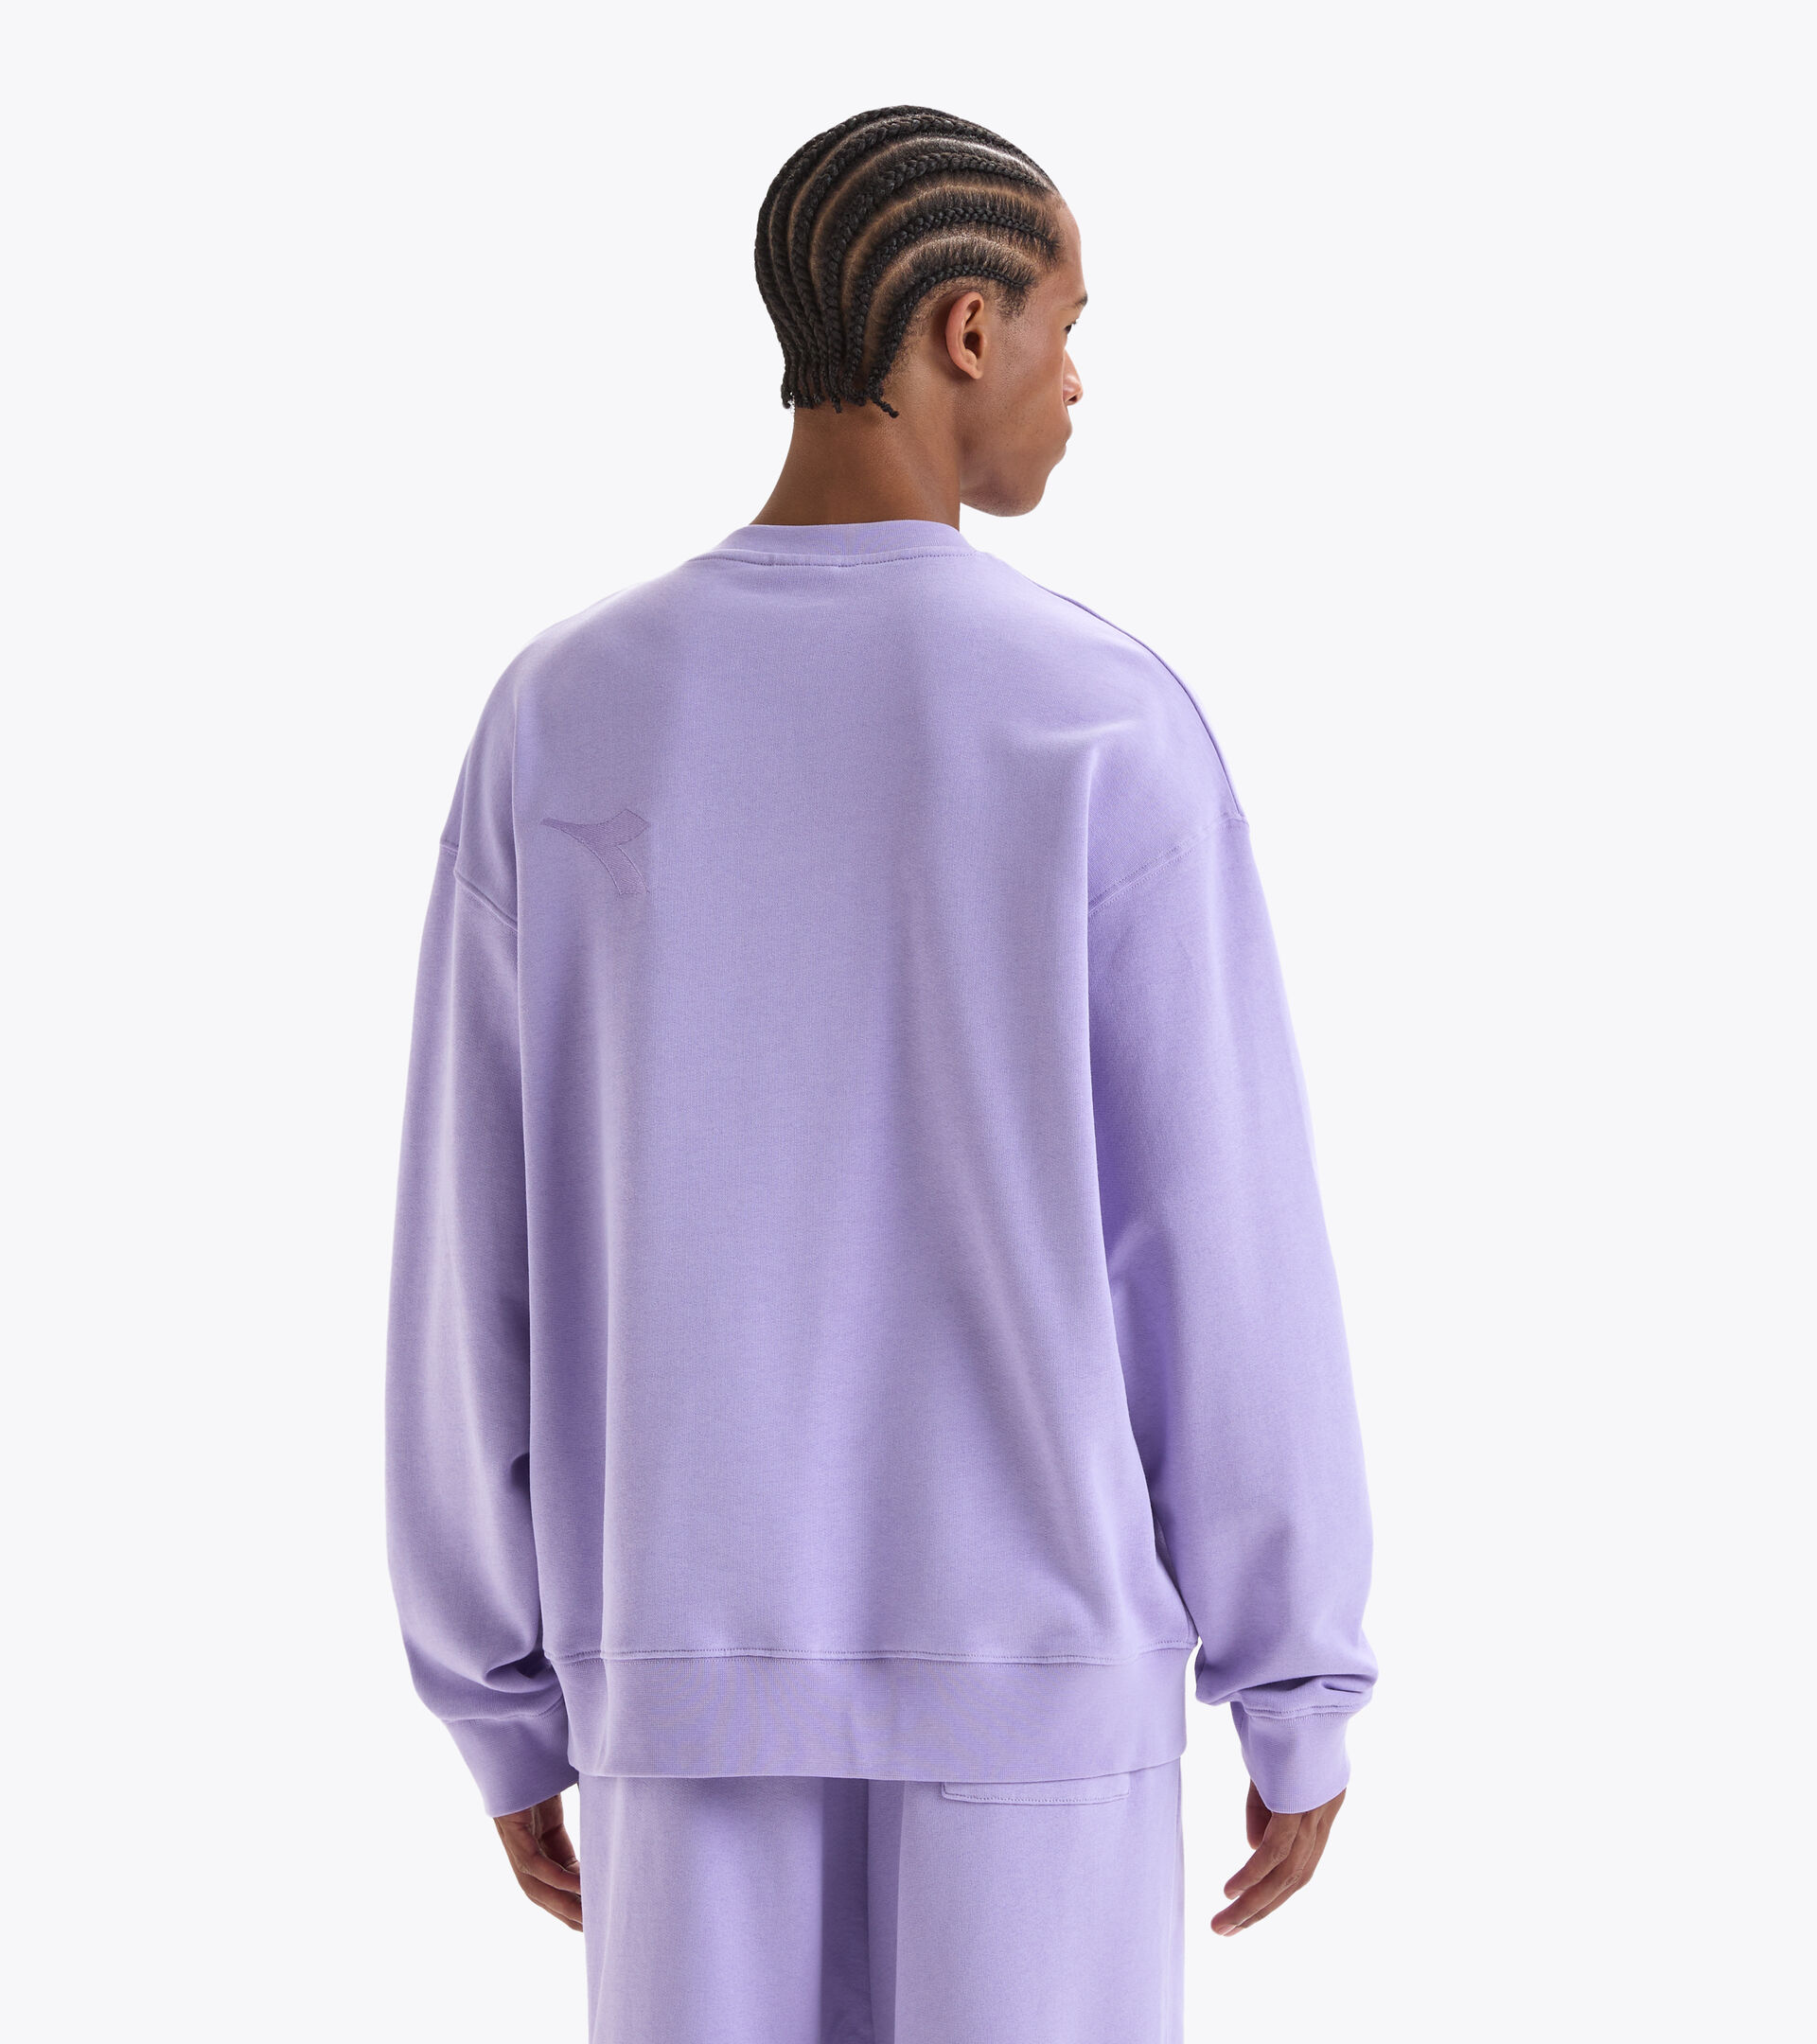 Cotton sweatshirt - Gender neutral SWEATSHIRT CREW SPW LOGO PURPLE ROSE - Diadora